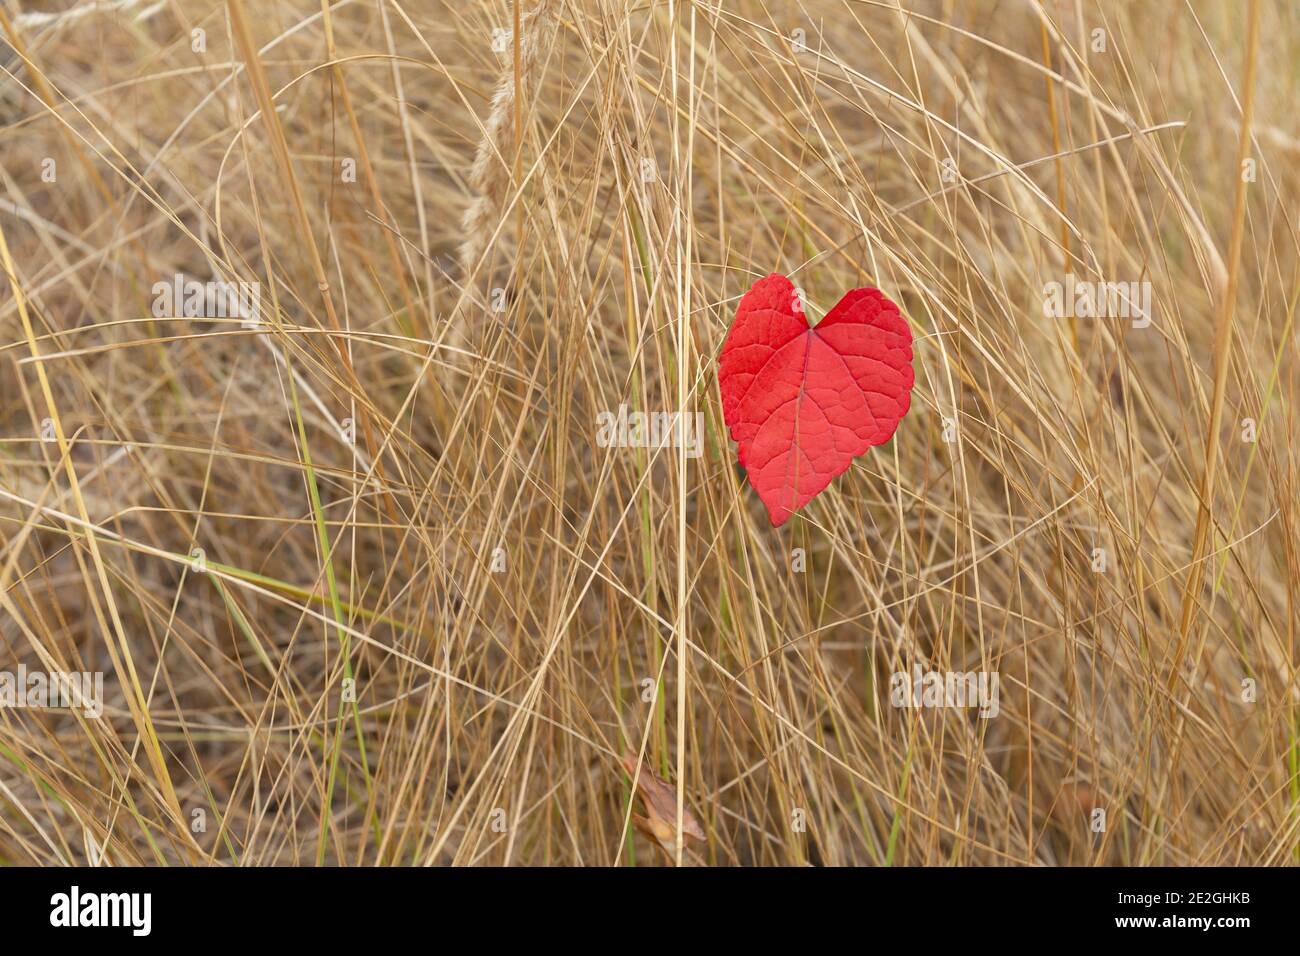 Cœur rouge en forme de feuille d'automne dans une grande herbe sèche Banque D'Images